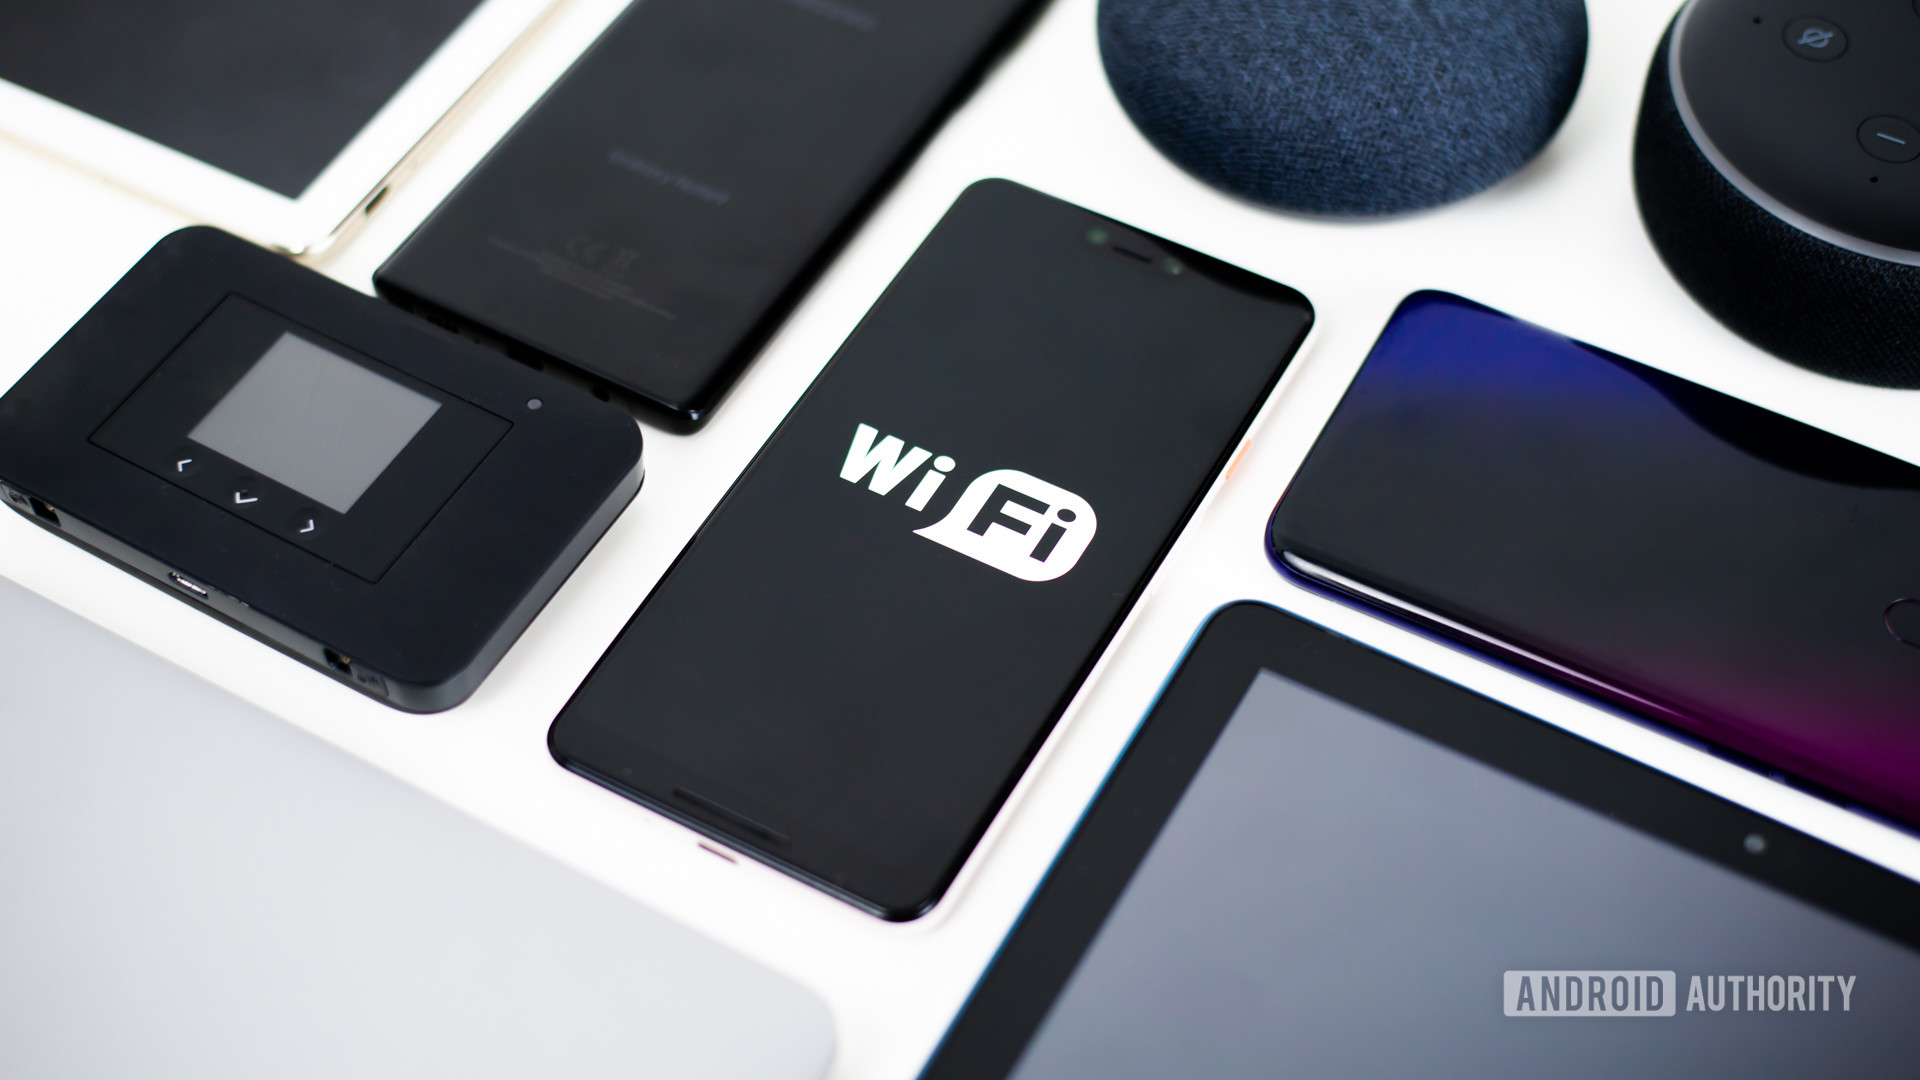 Image de stock d'appareils Wi-Fi montrant divers appareils Wi-Fi tels que les smartphones et les tablettes